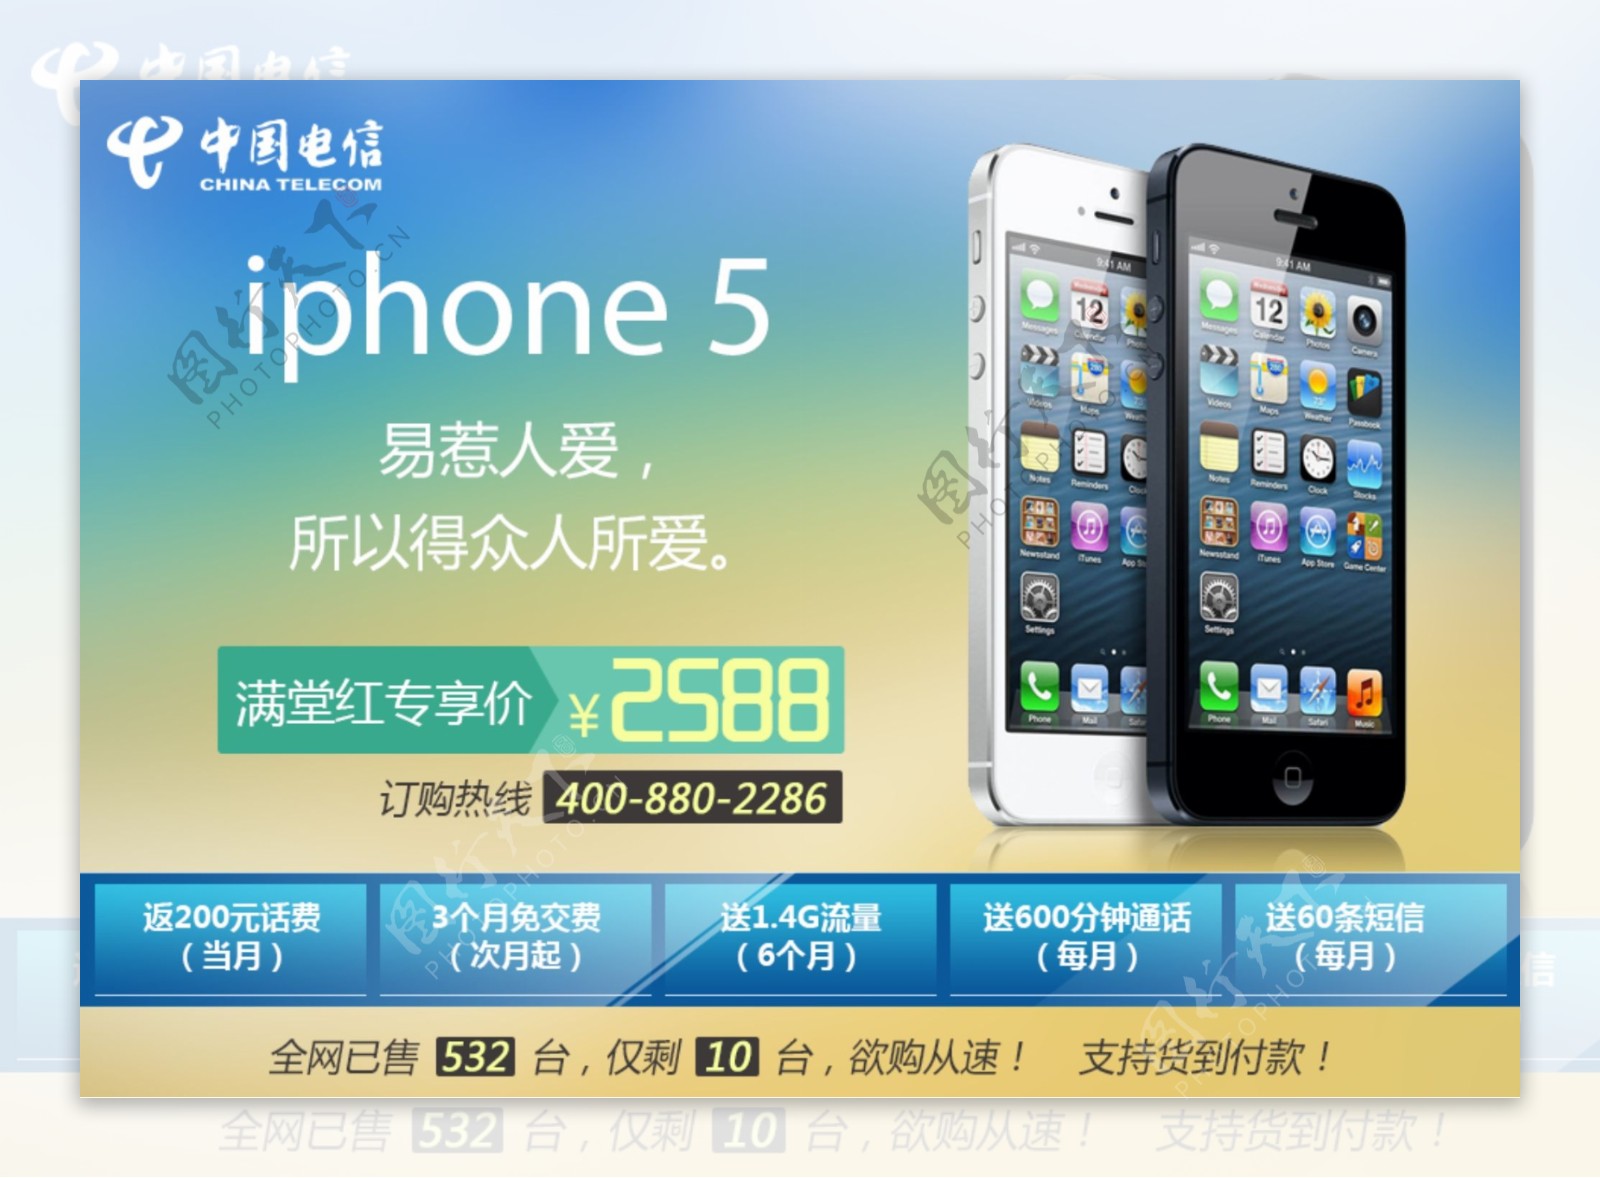 iphone5广告图片